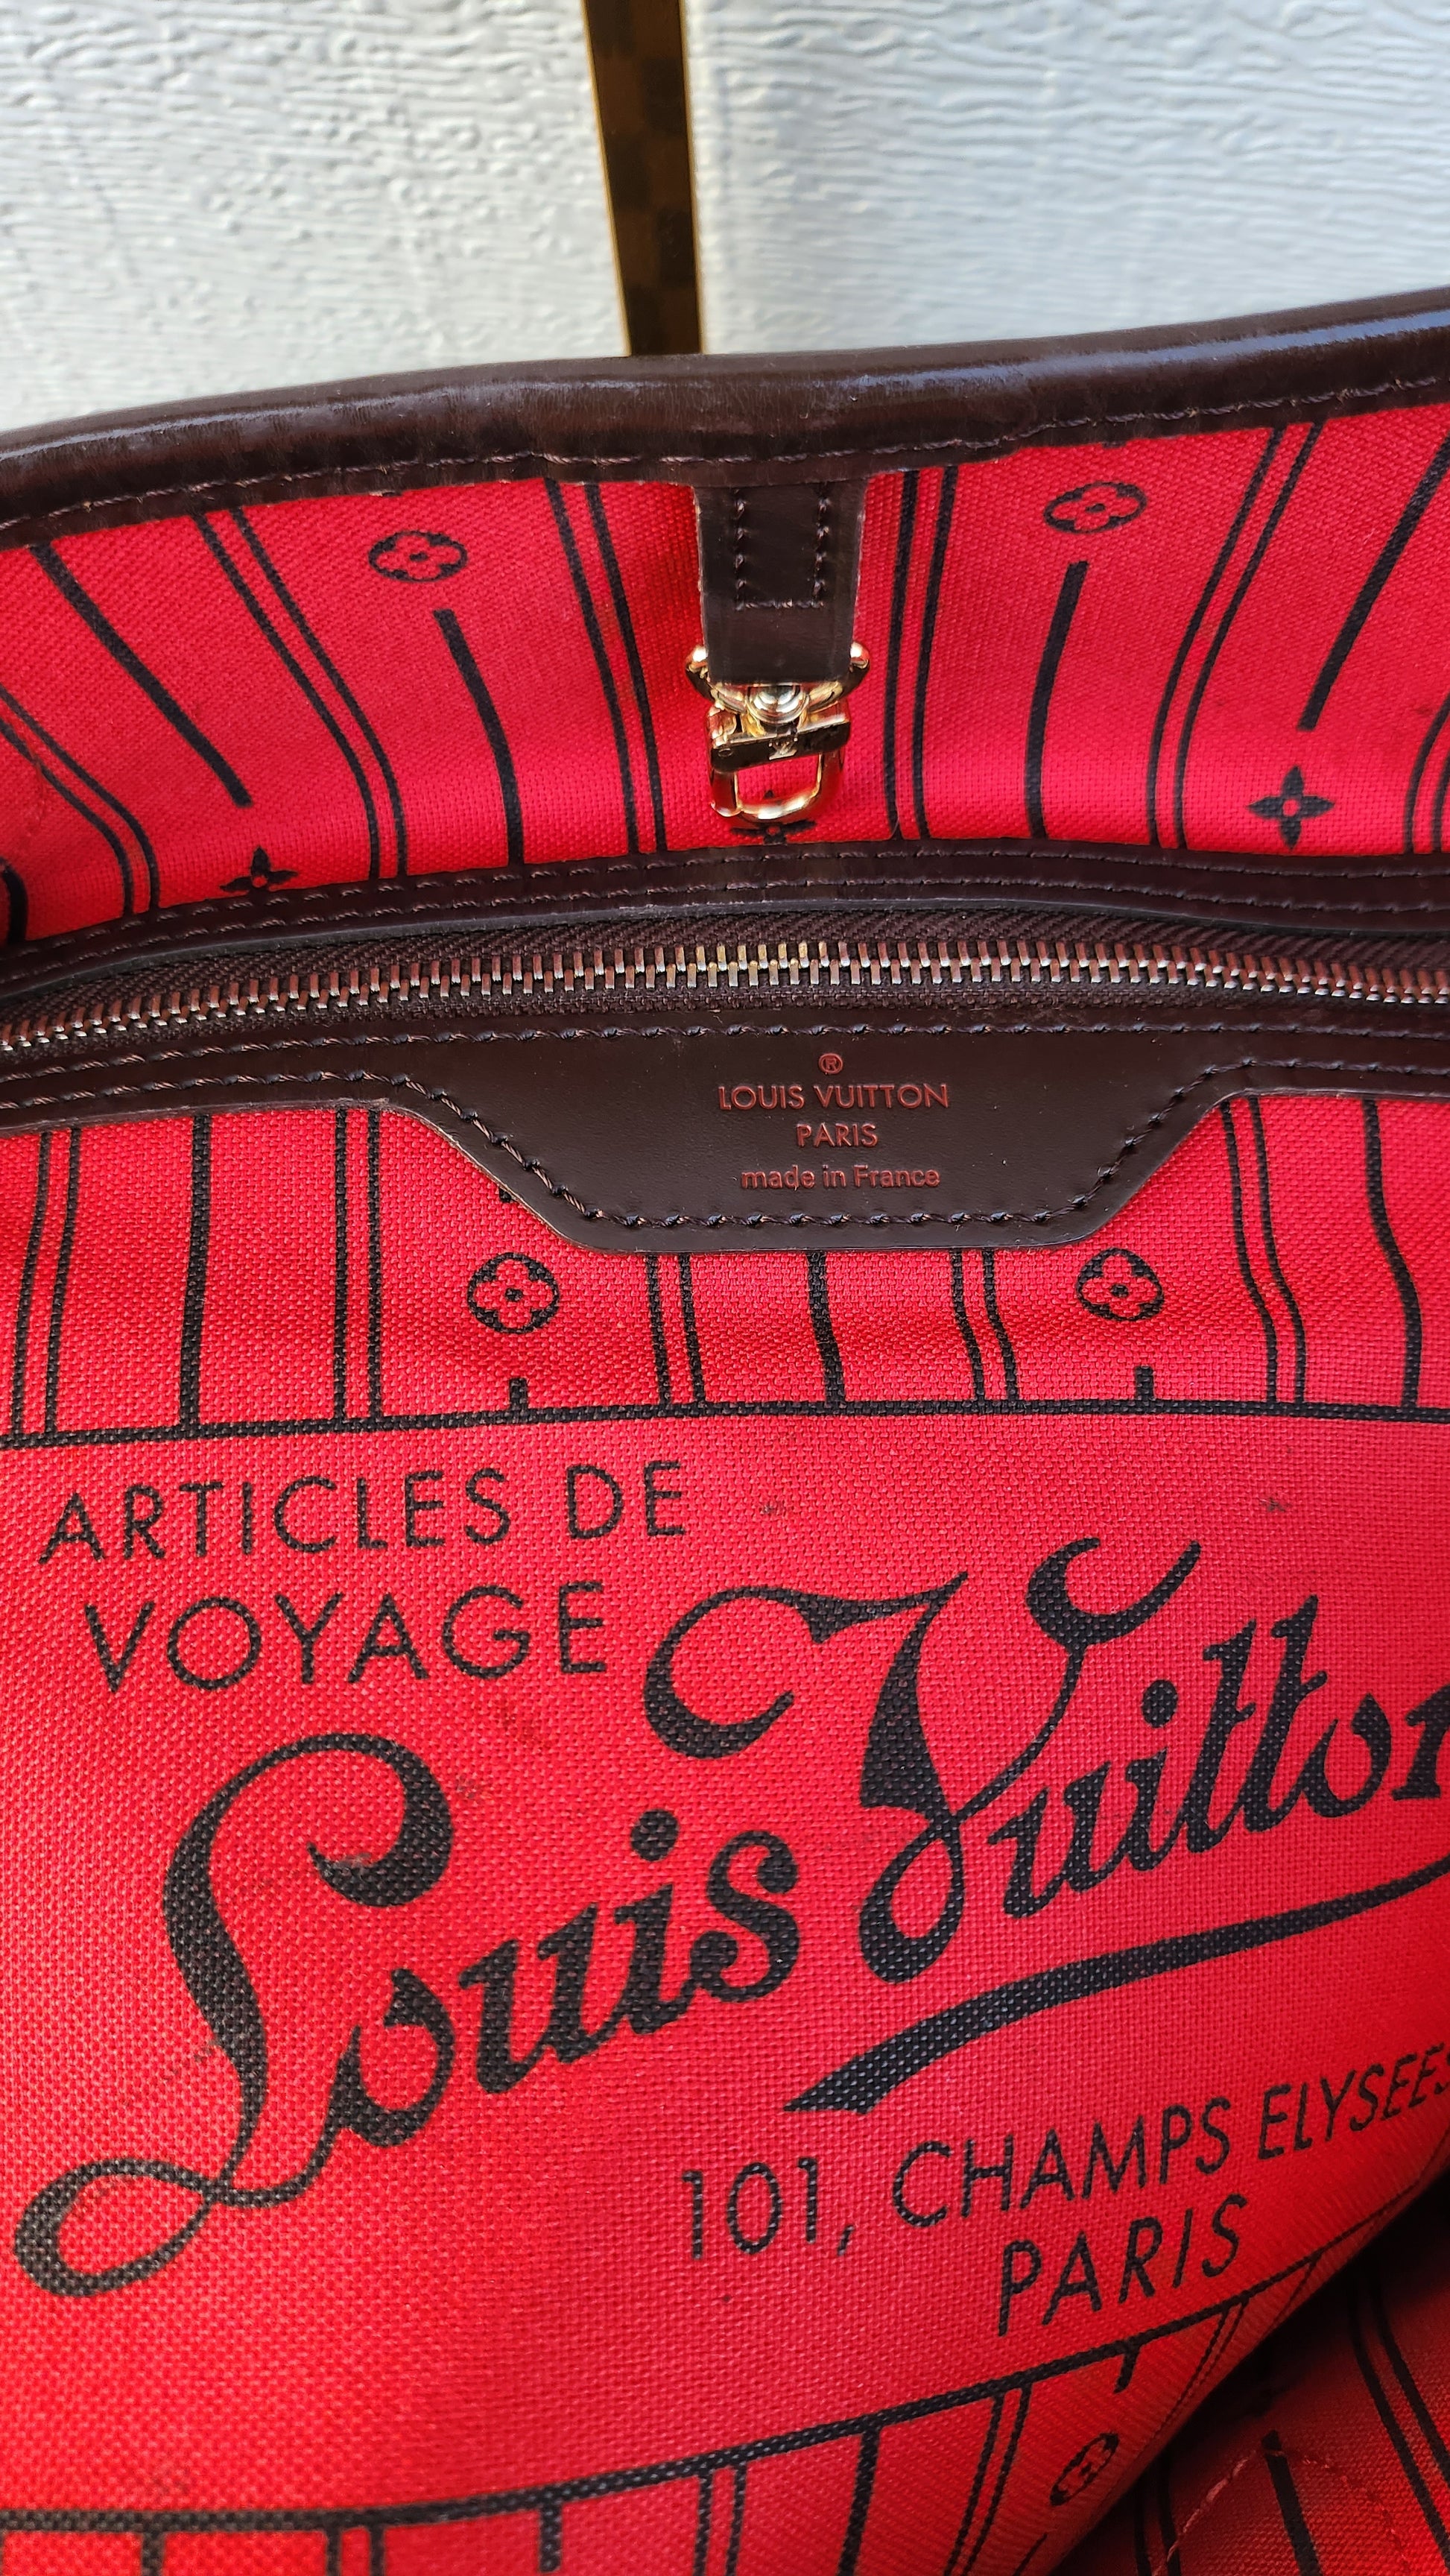 Louis Vuitton, Bags, 1 Champs Elysees Paris Louis Vuitton